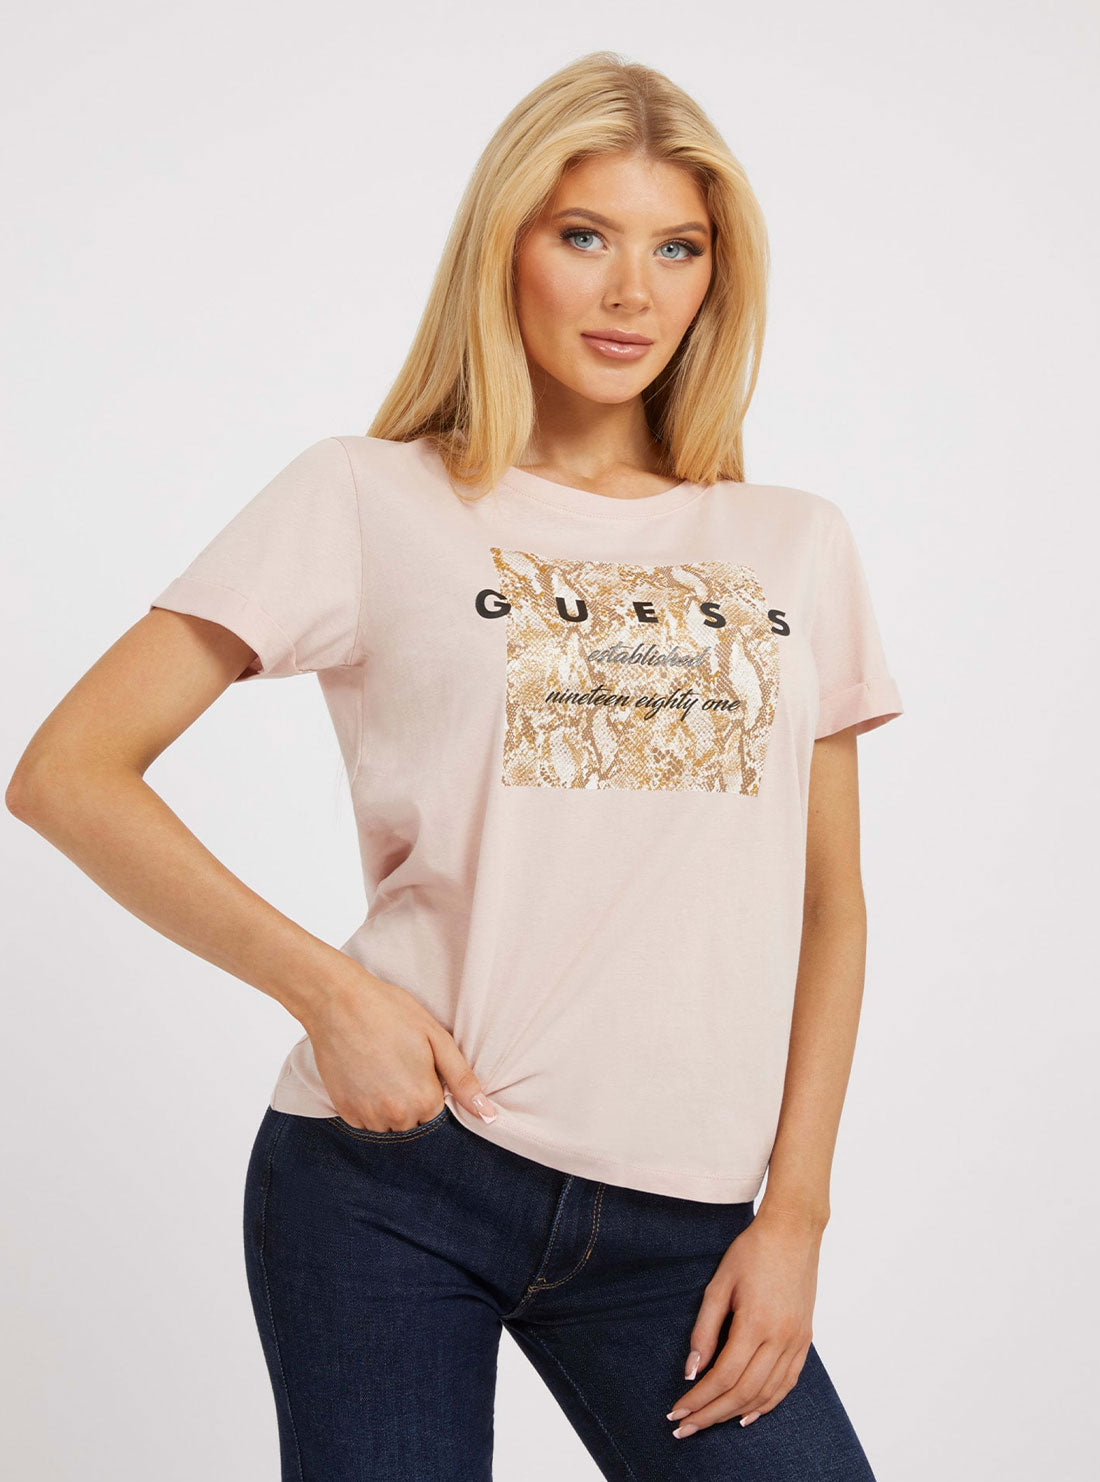 Light Pink Python Print T-Shirt | GUESS Women's Apparel | front view